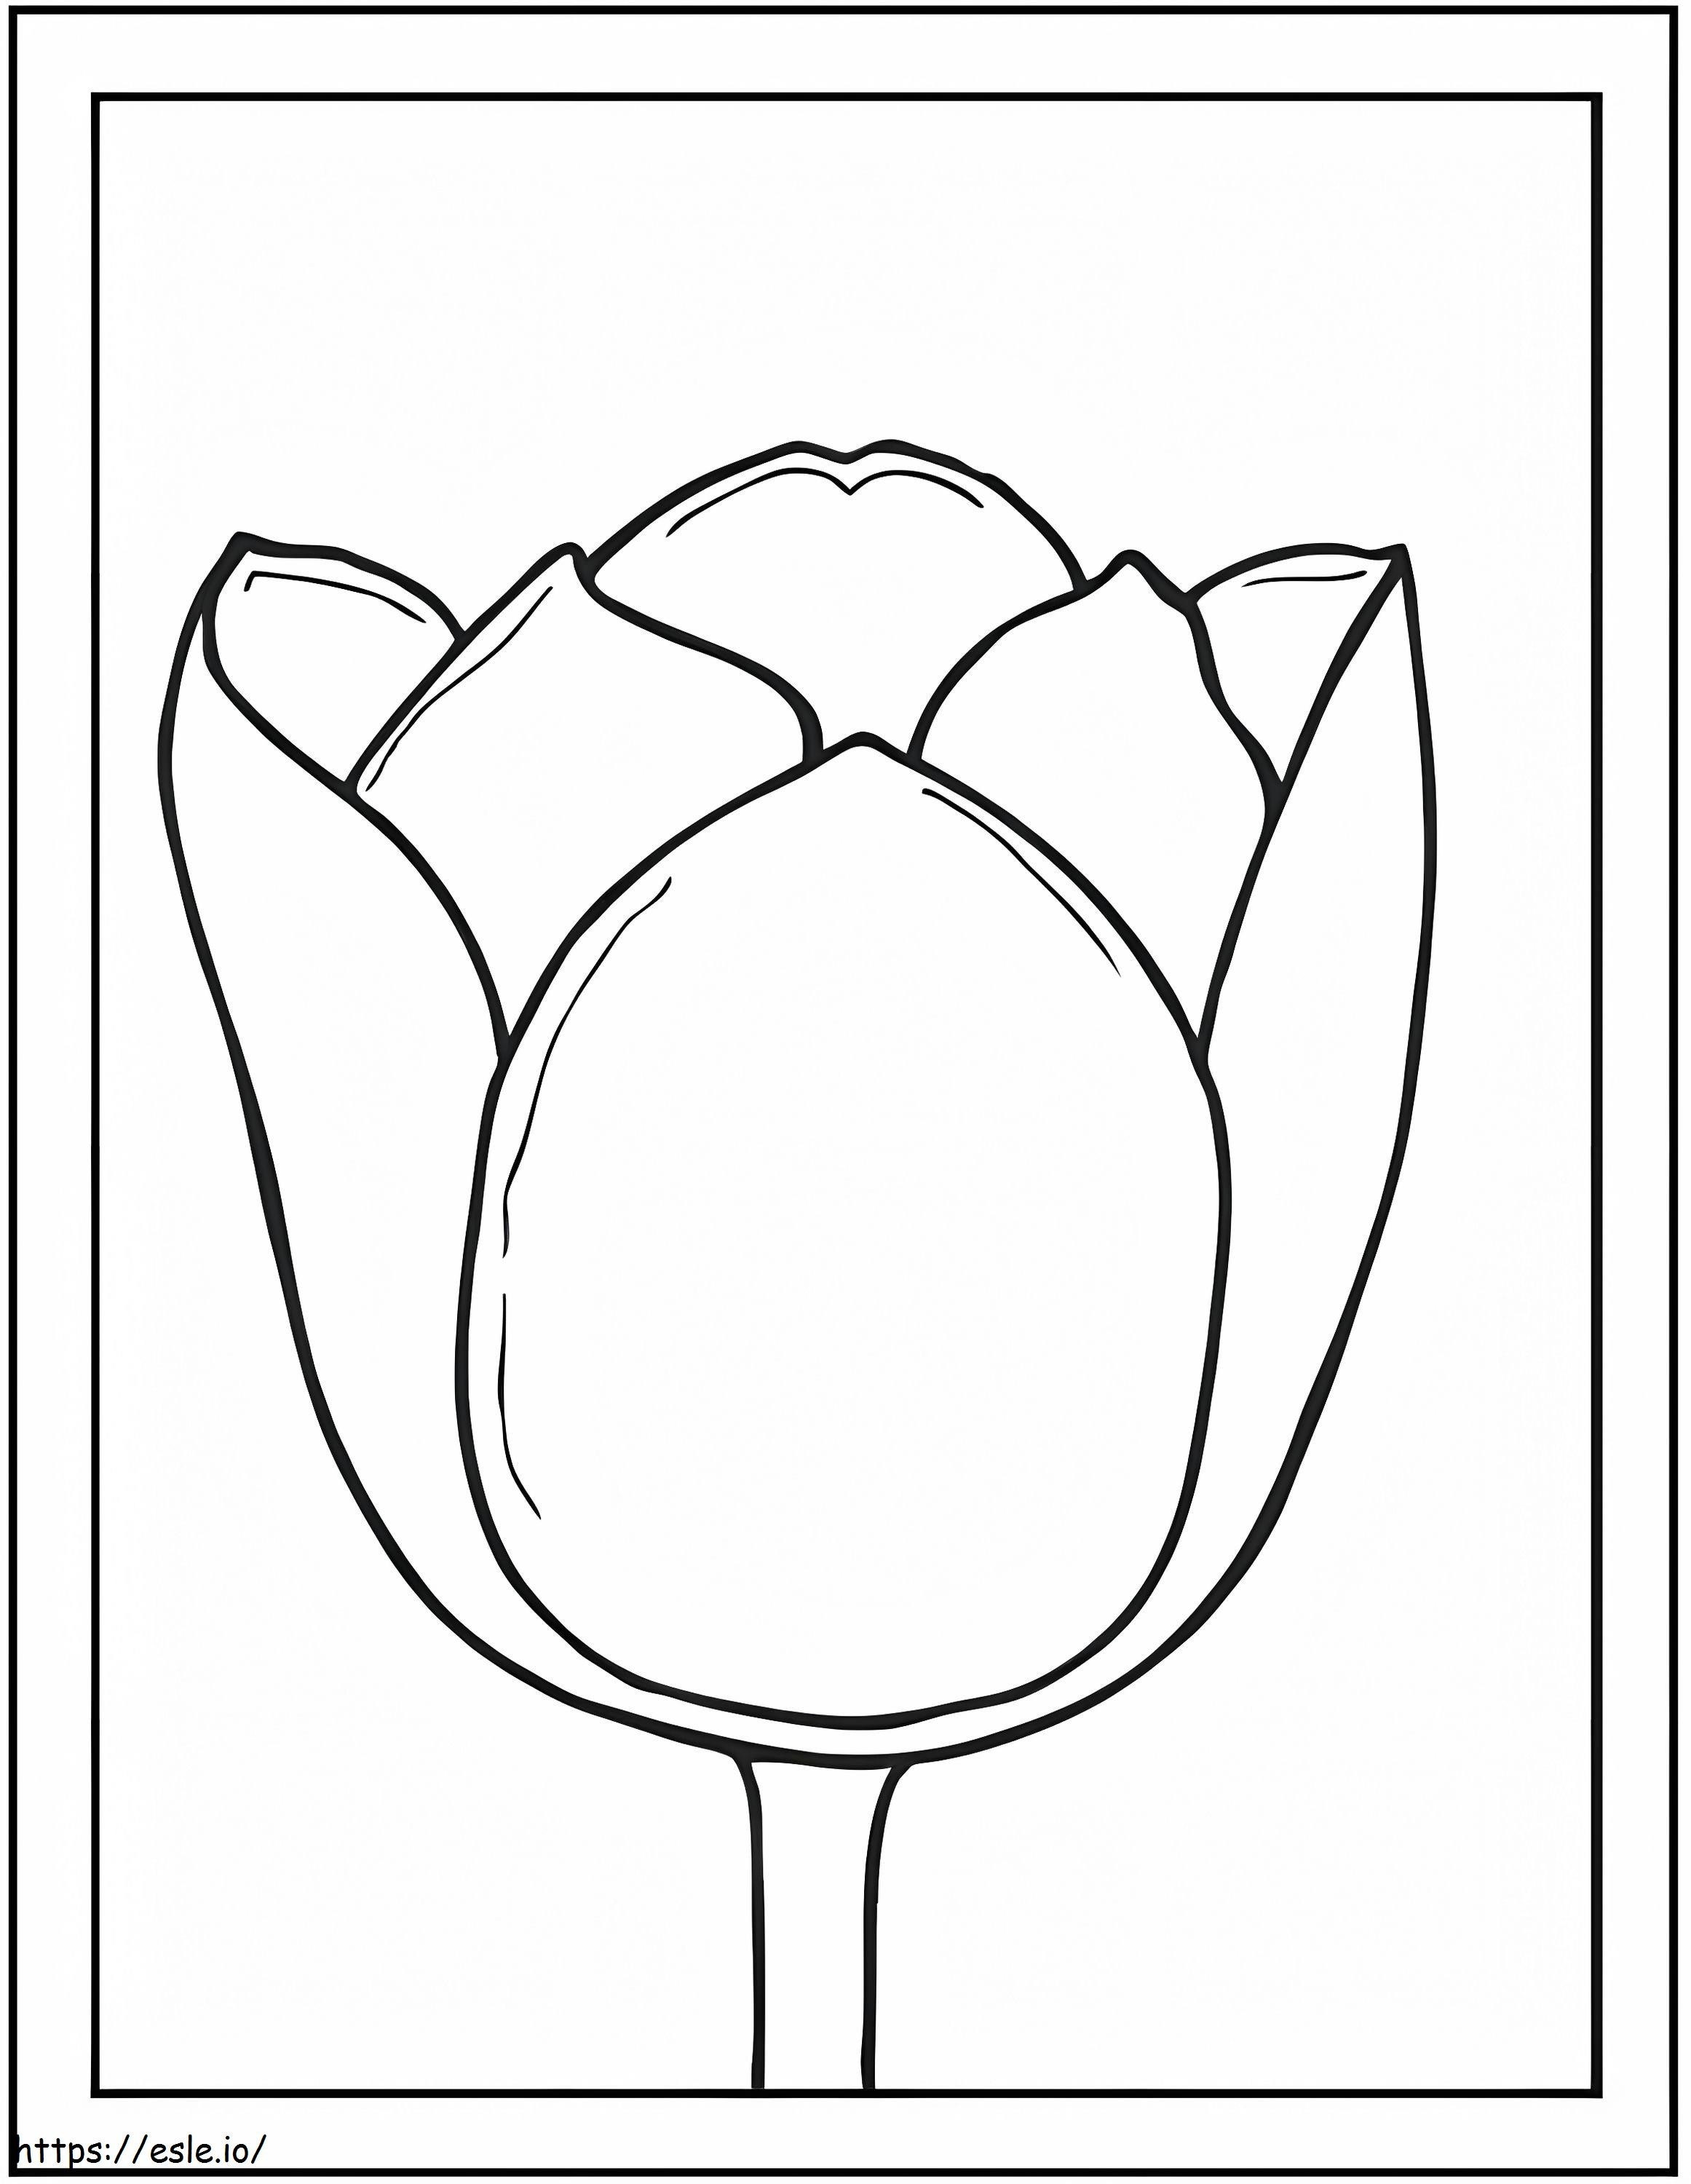 Marcos de fotos de tulipanes para colorear